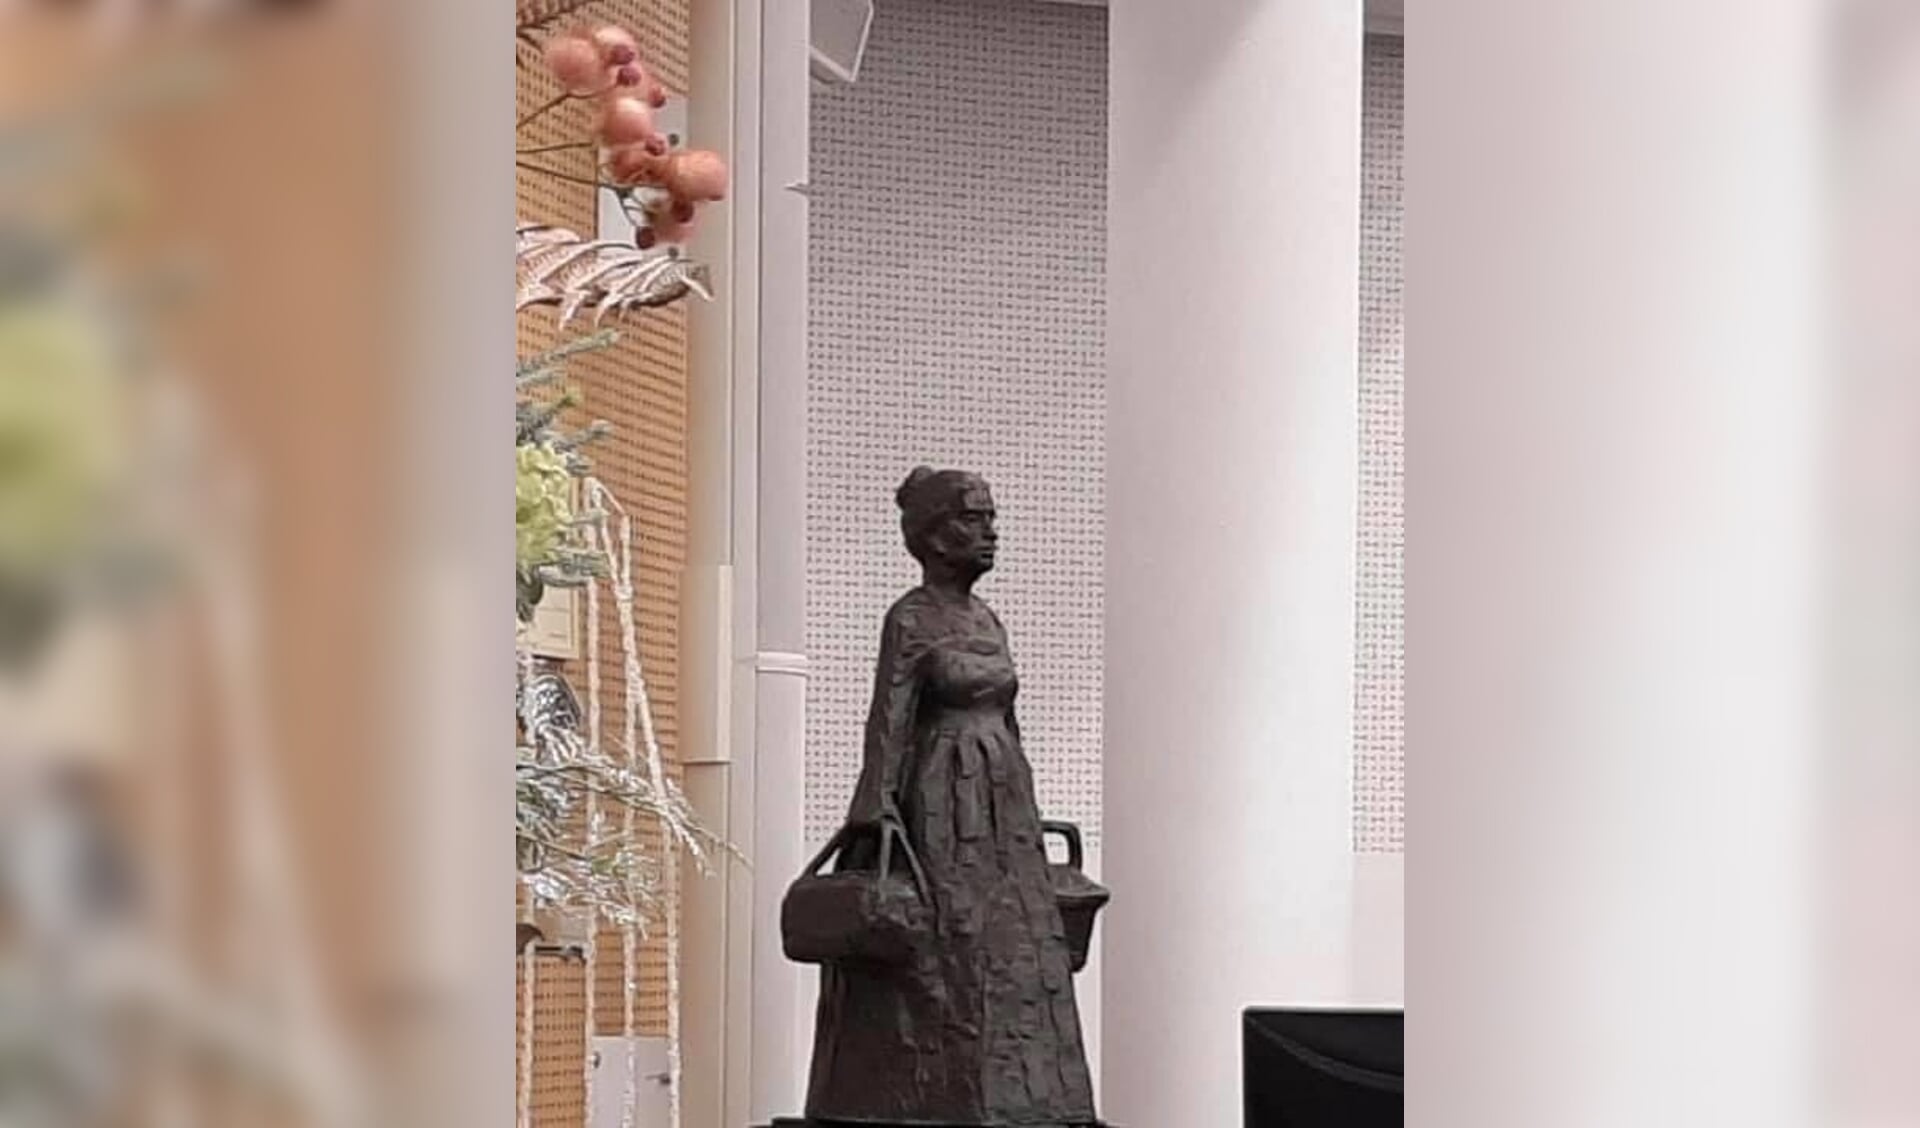 RIJSSEN - Het bronzen eiervrouwtje stond donderdagavond in de raadszaal in Rijssen. 